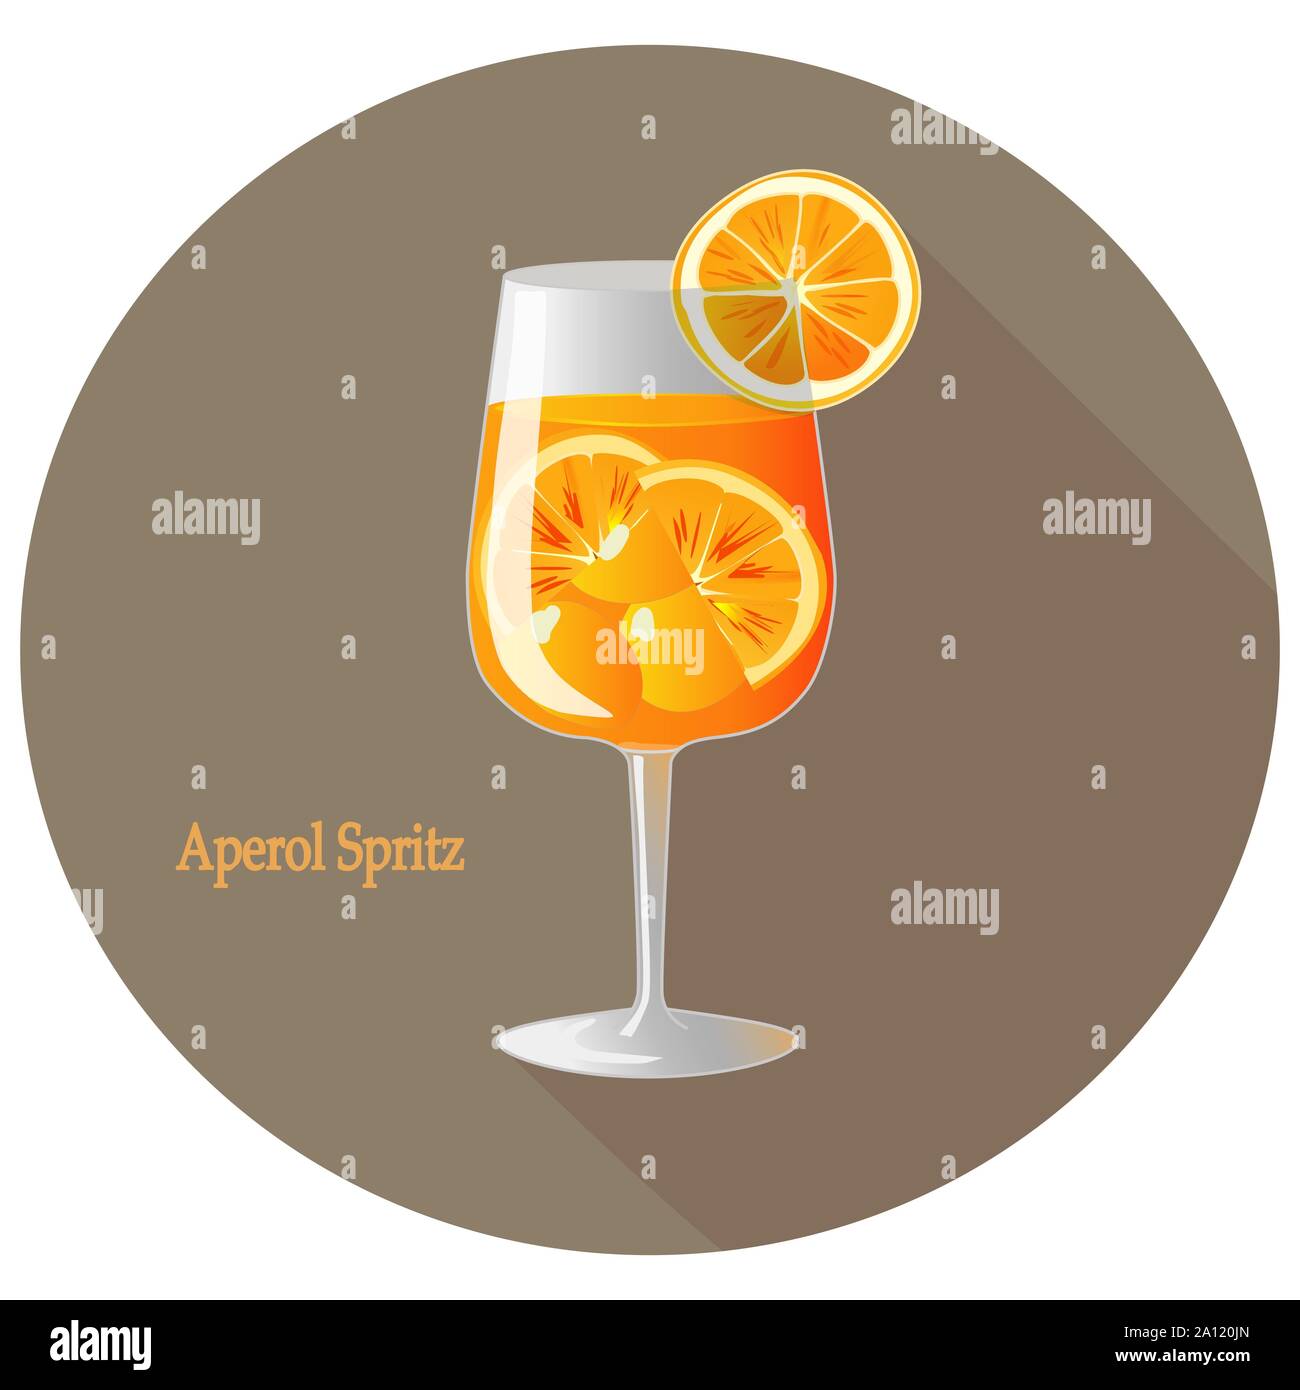 Hand gezeichnet vector Abbildung: Aperol Spritz Alkohol Cocktail mit einem Citrus Orange Slice Dekoration, in einem braunen Kreis mit langen Schatten und Text. B Stock Vektor